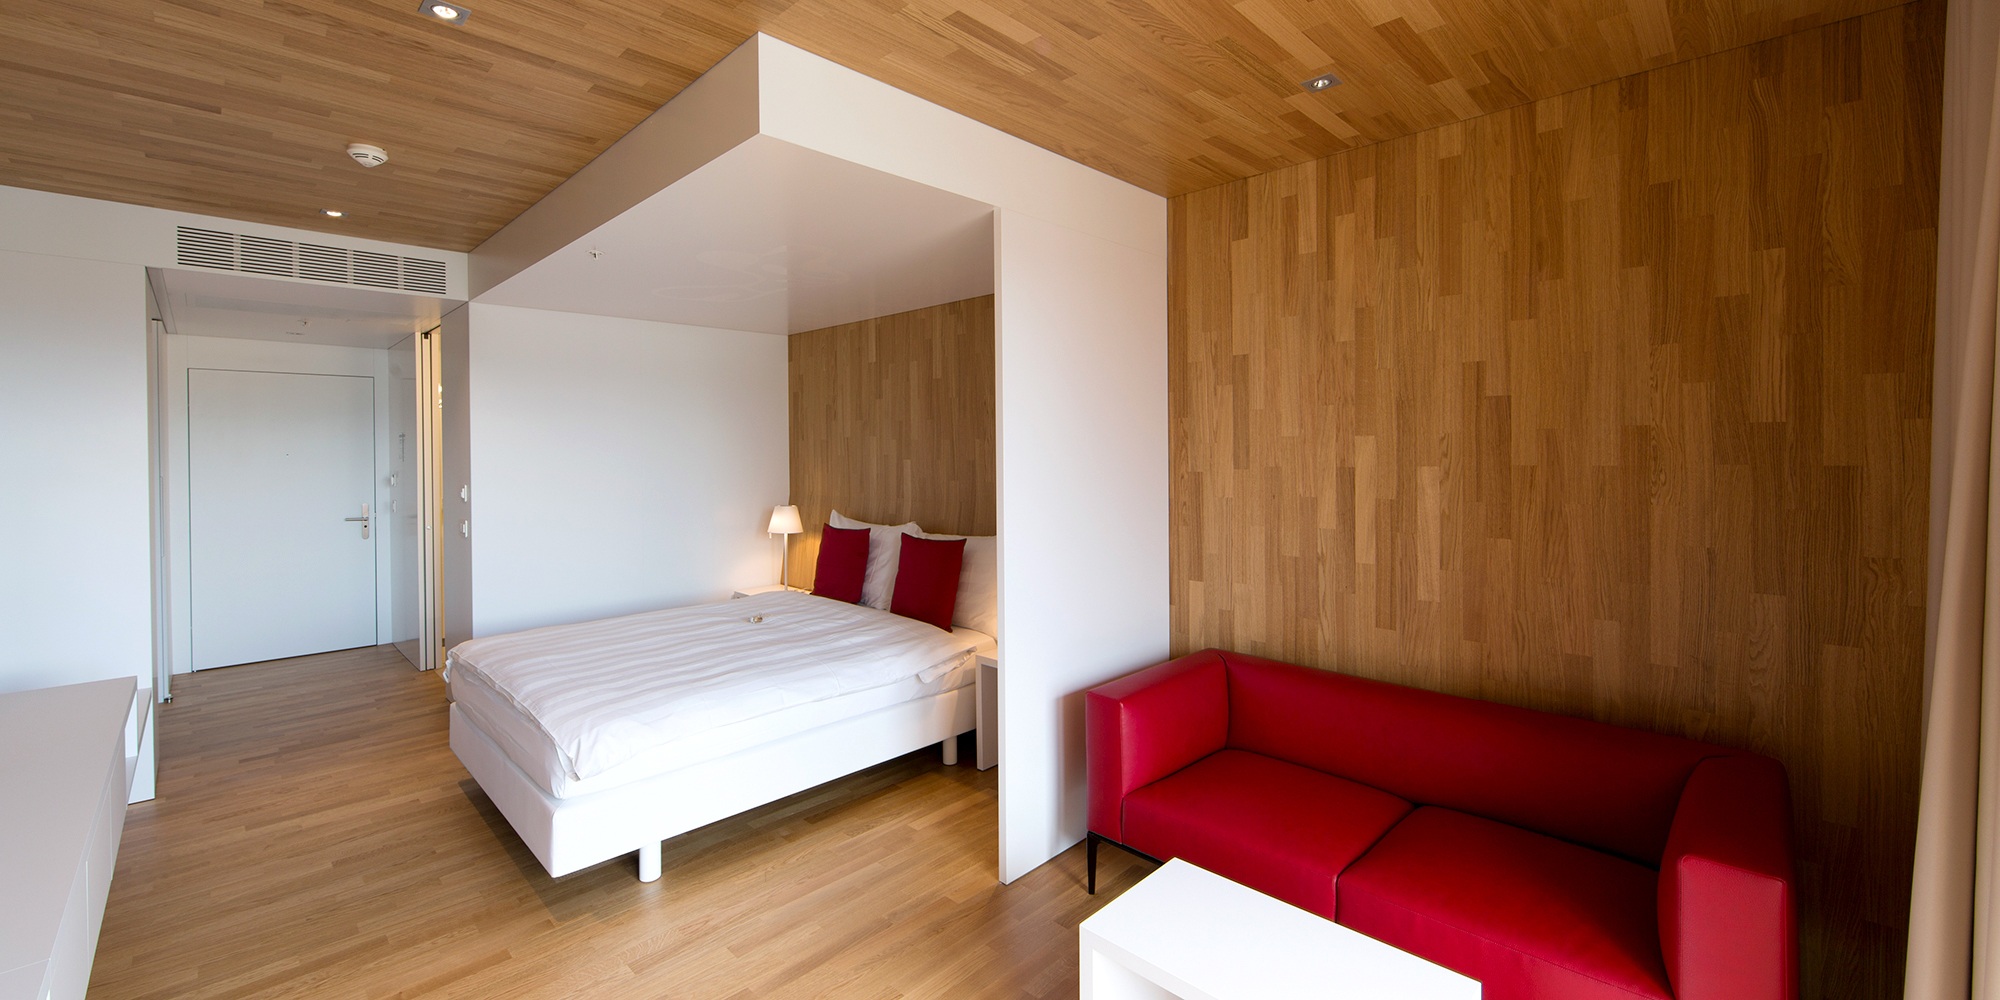 Le sol, les murs et le plafond de cette chambre de l’hôtel Säntispark sont revêtus du même bois. La chambre lumineuse est équipée d’un mobilier moderne.